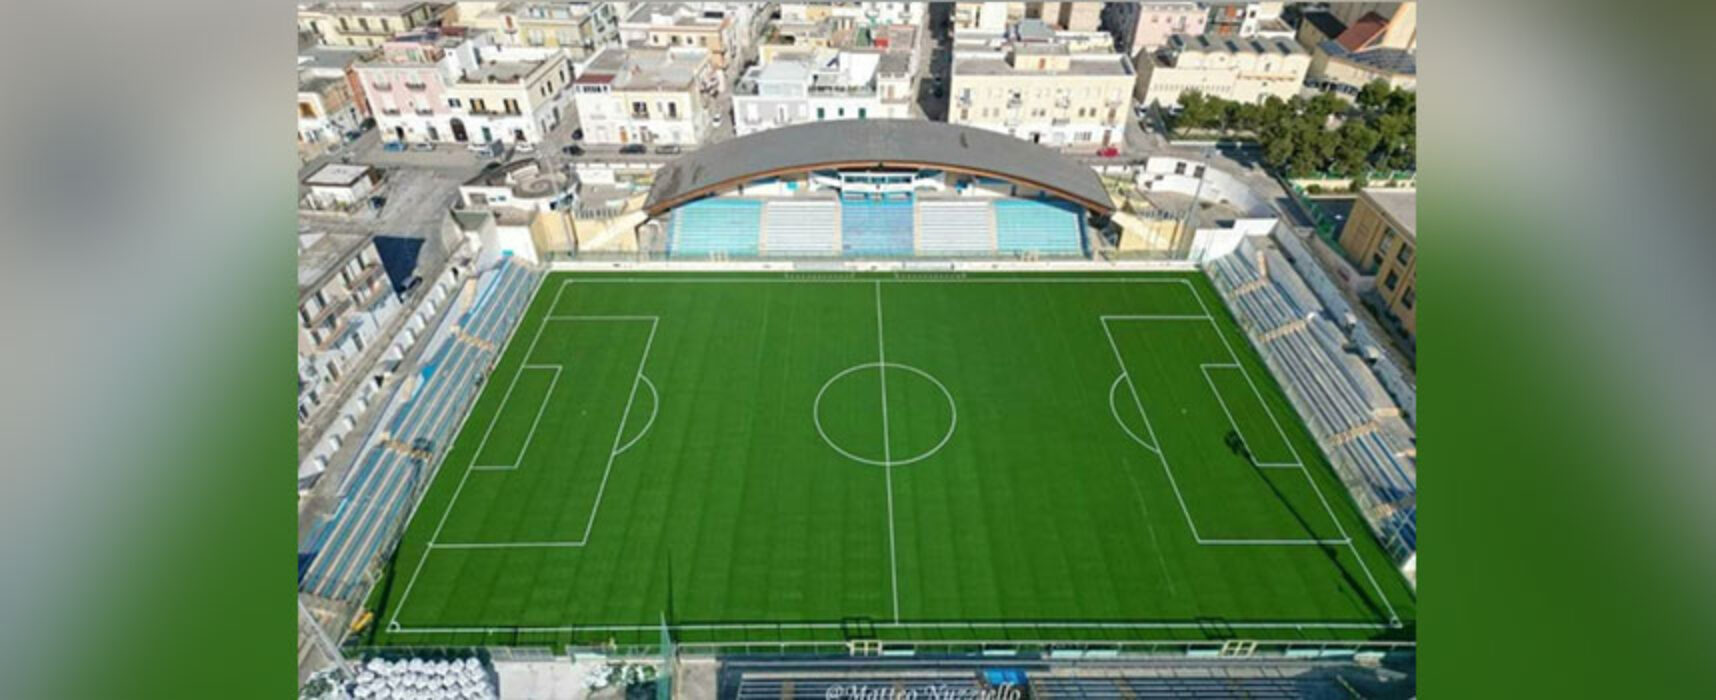 Manfredonia-Bisceglie si gioca allo stadio “Miramare”